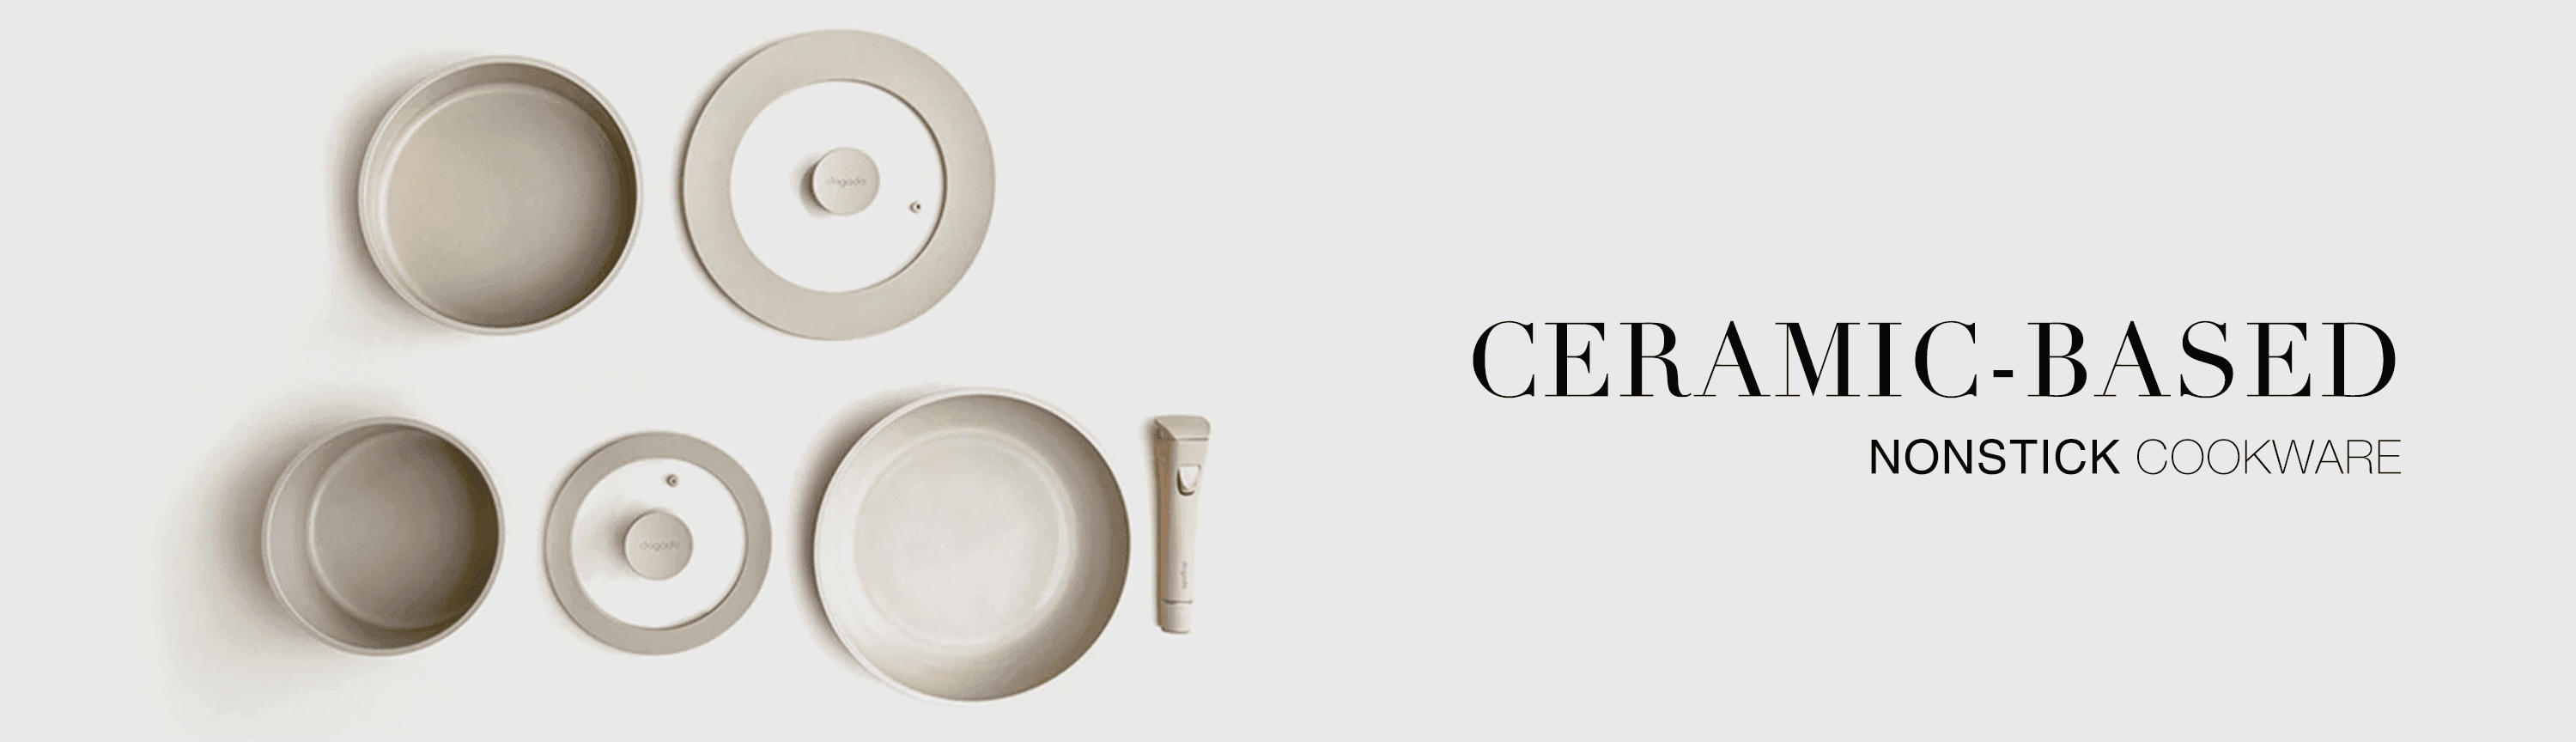 Ceramic Nonstick Cookware